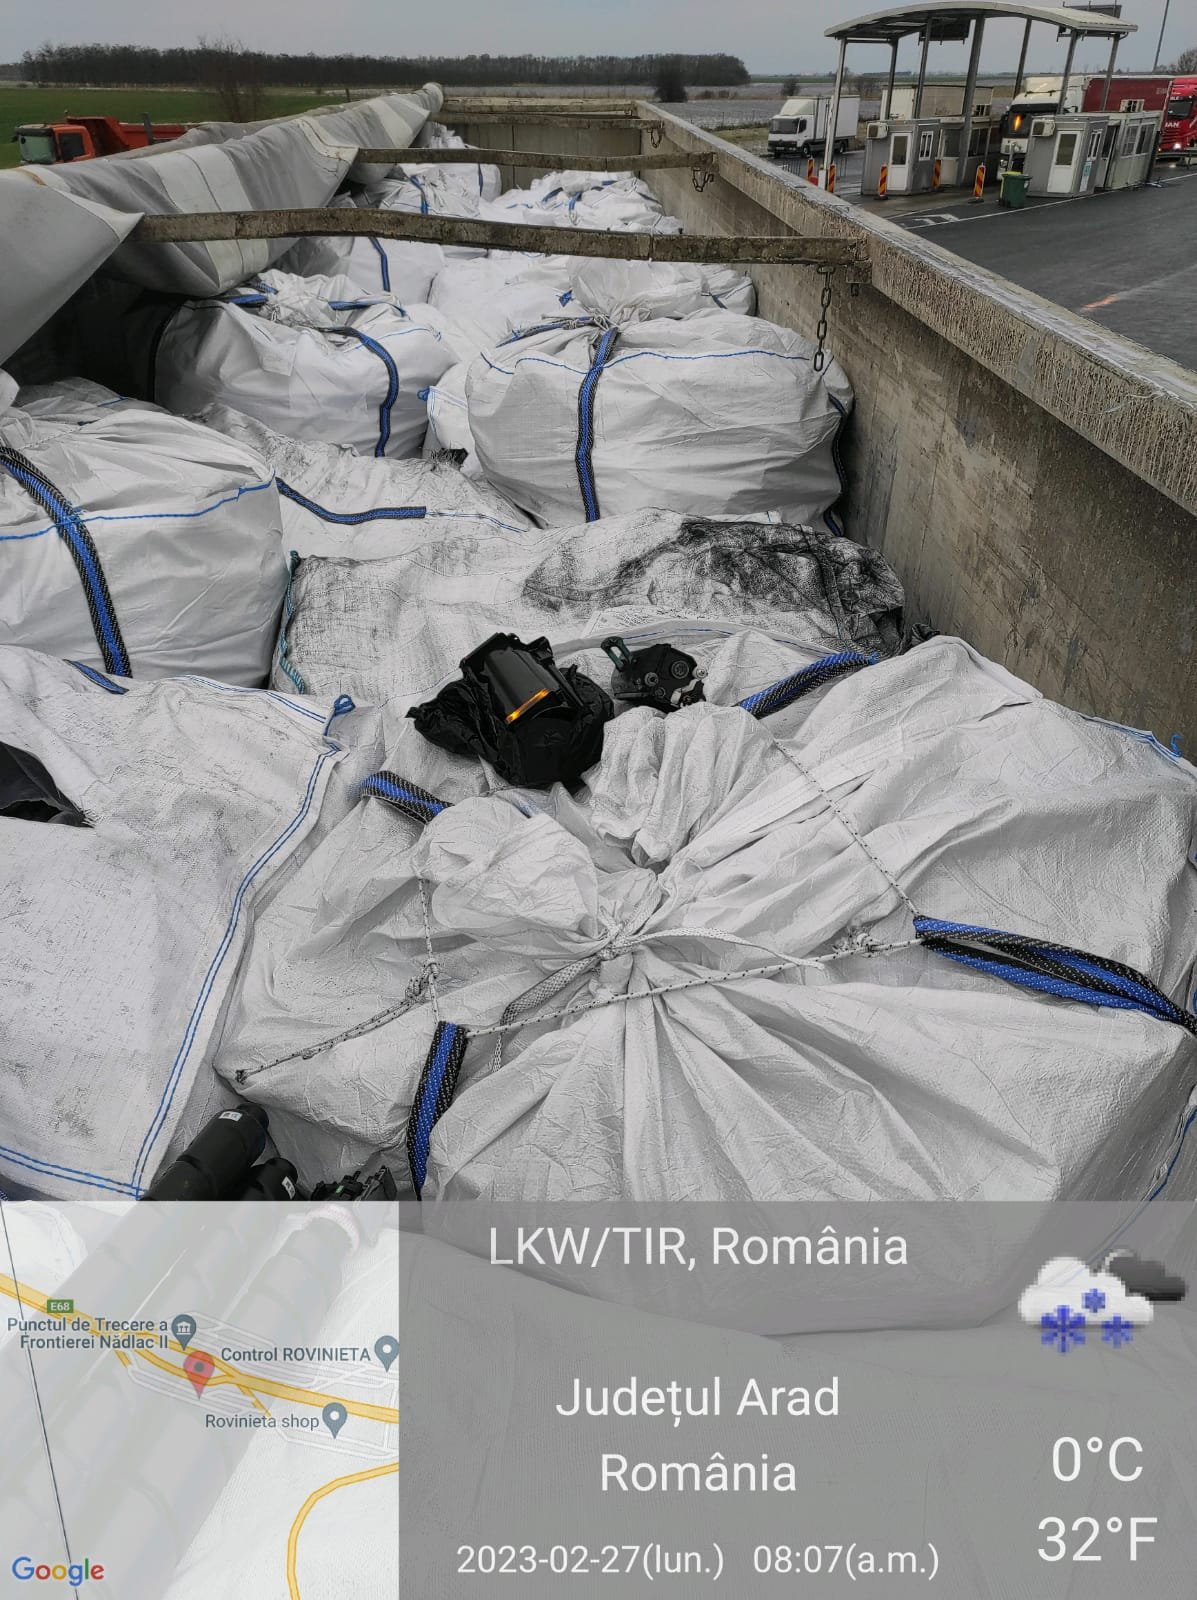 Aproape 12 tone de deşeuri de materiale plastice şi cauciuc oprite la vamă de Garda de Mediu (FOTO)